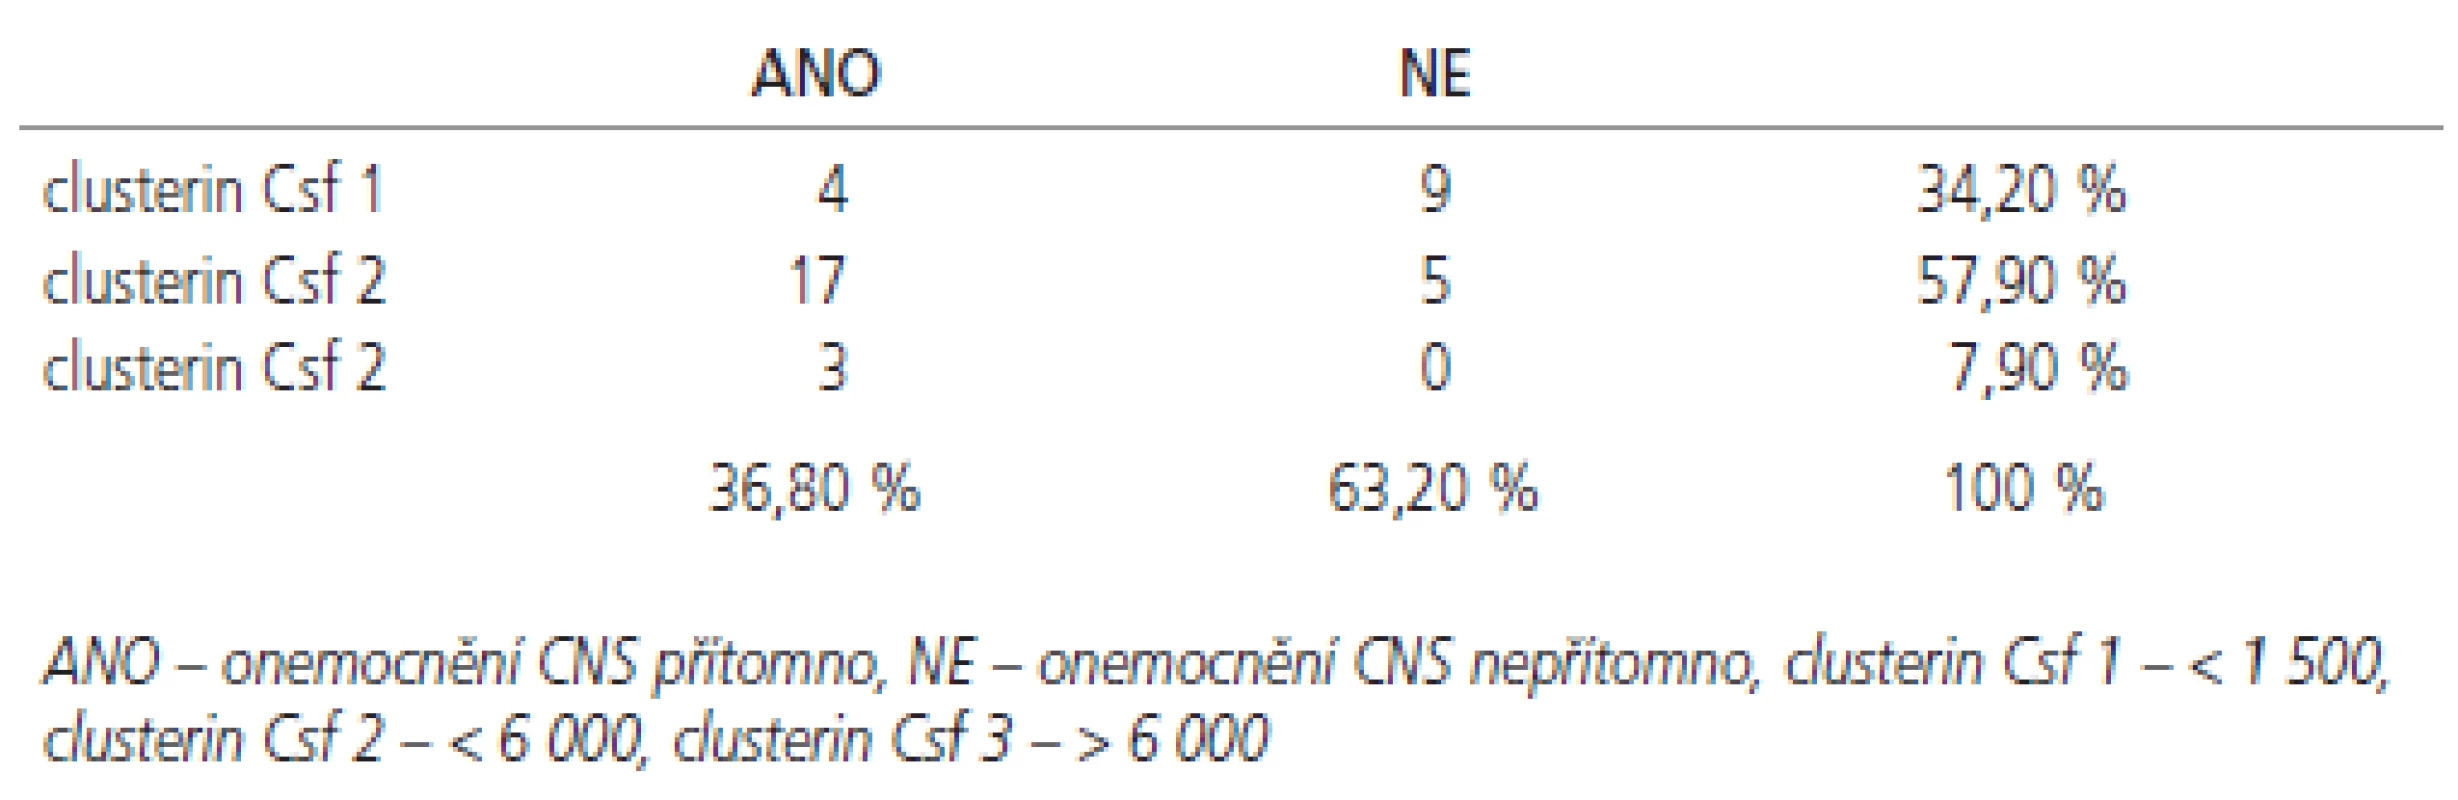 Čtyřpolní tabulka pro hodnocení vztahu clusterinu v likvoru a přítomnosti onemocnění CNS (&amp;#967;&lt;sup&gt;2&lt;/sup&gt; 9,5, DF 2, p = 0,009).